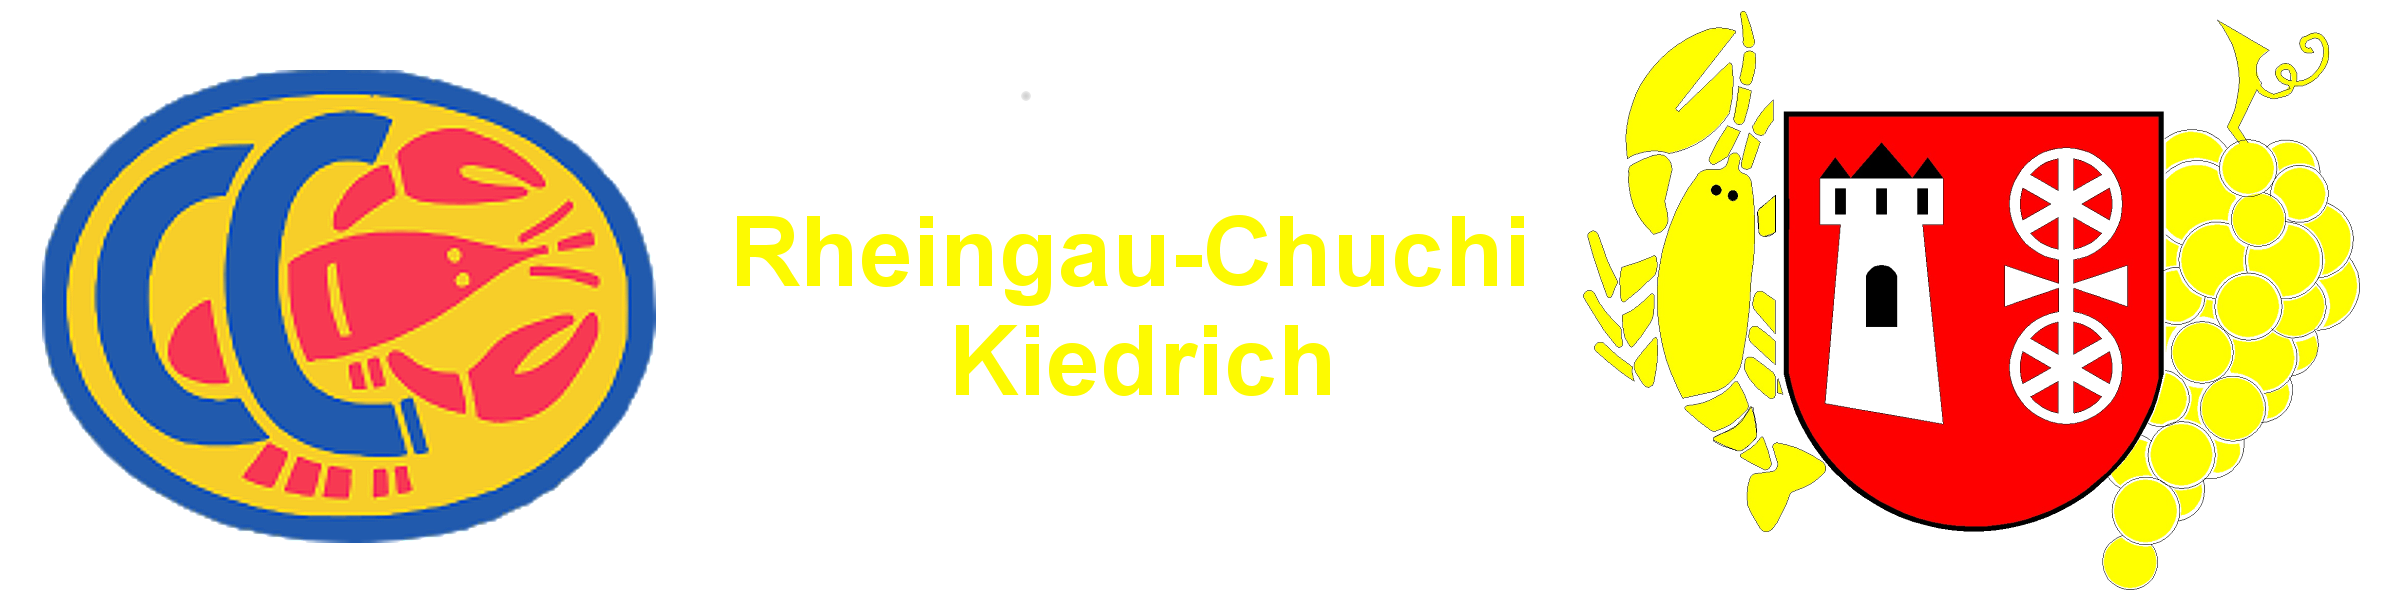 Rheingau-Chuchi-Kiedrich